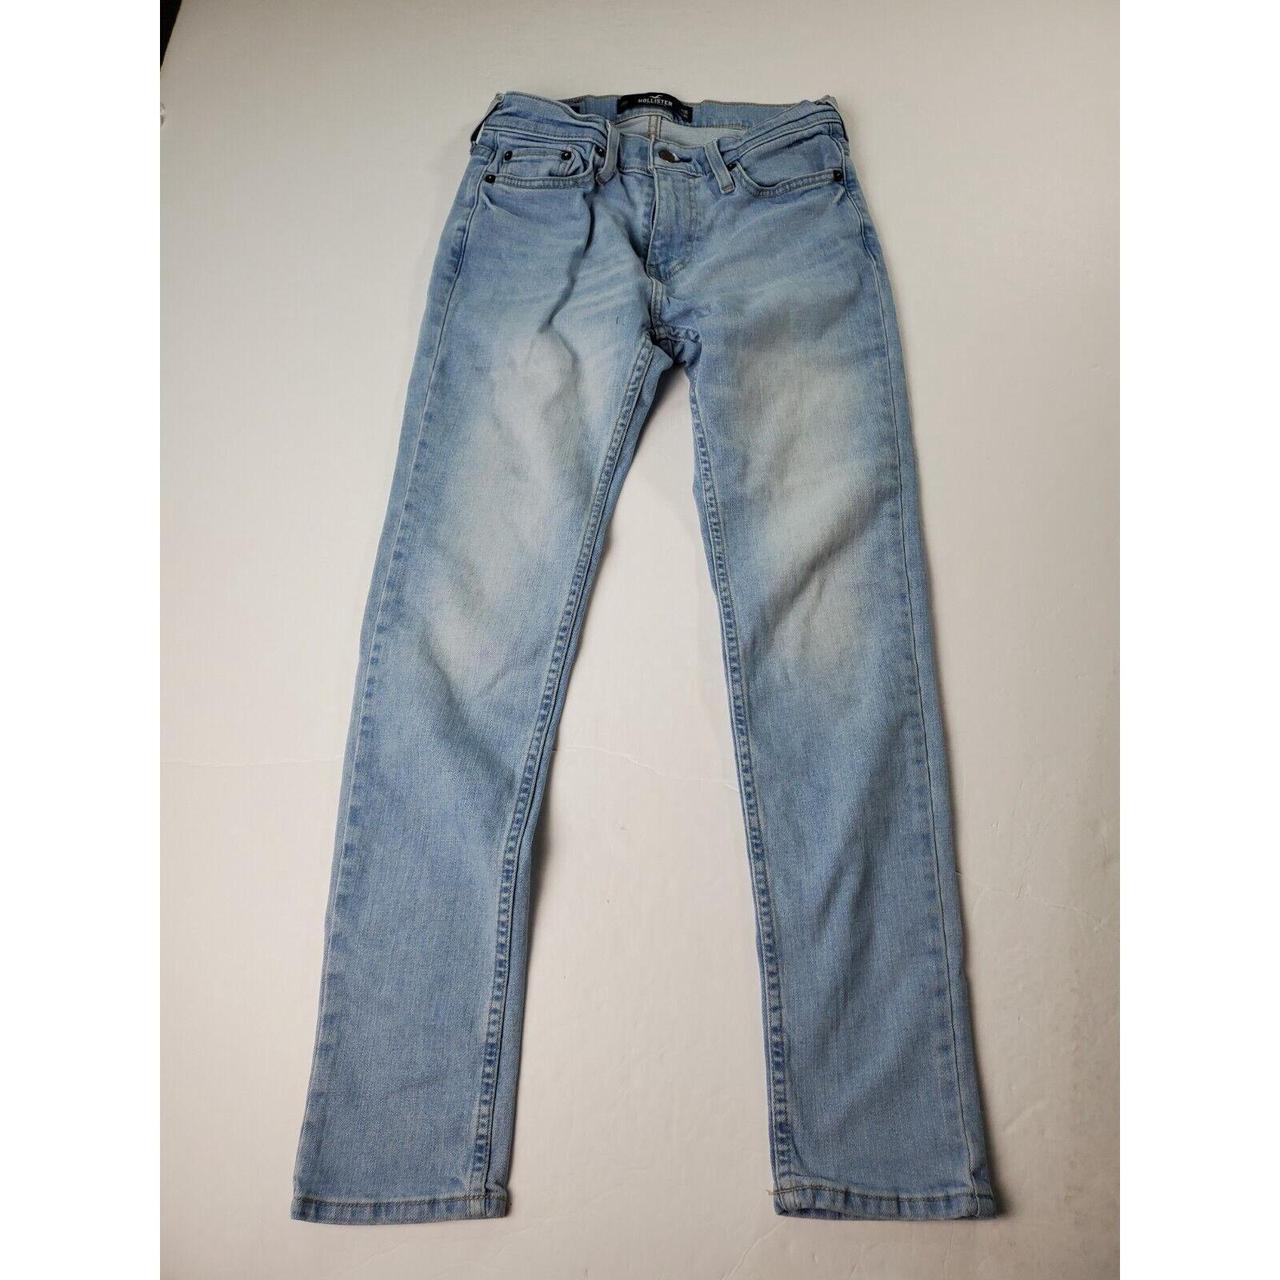 Hollister Skinny Jeans Size 26X30 Mens Light Wash... - Depop